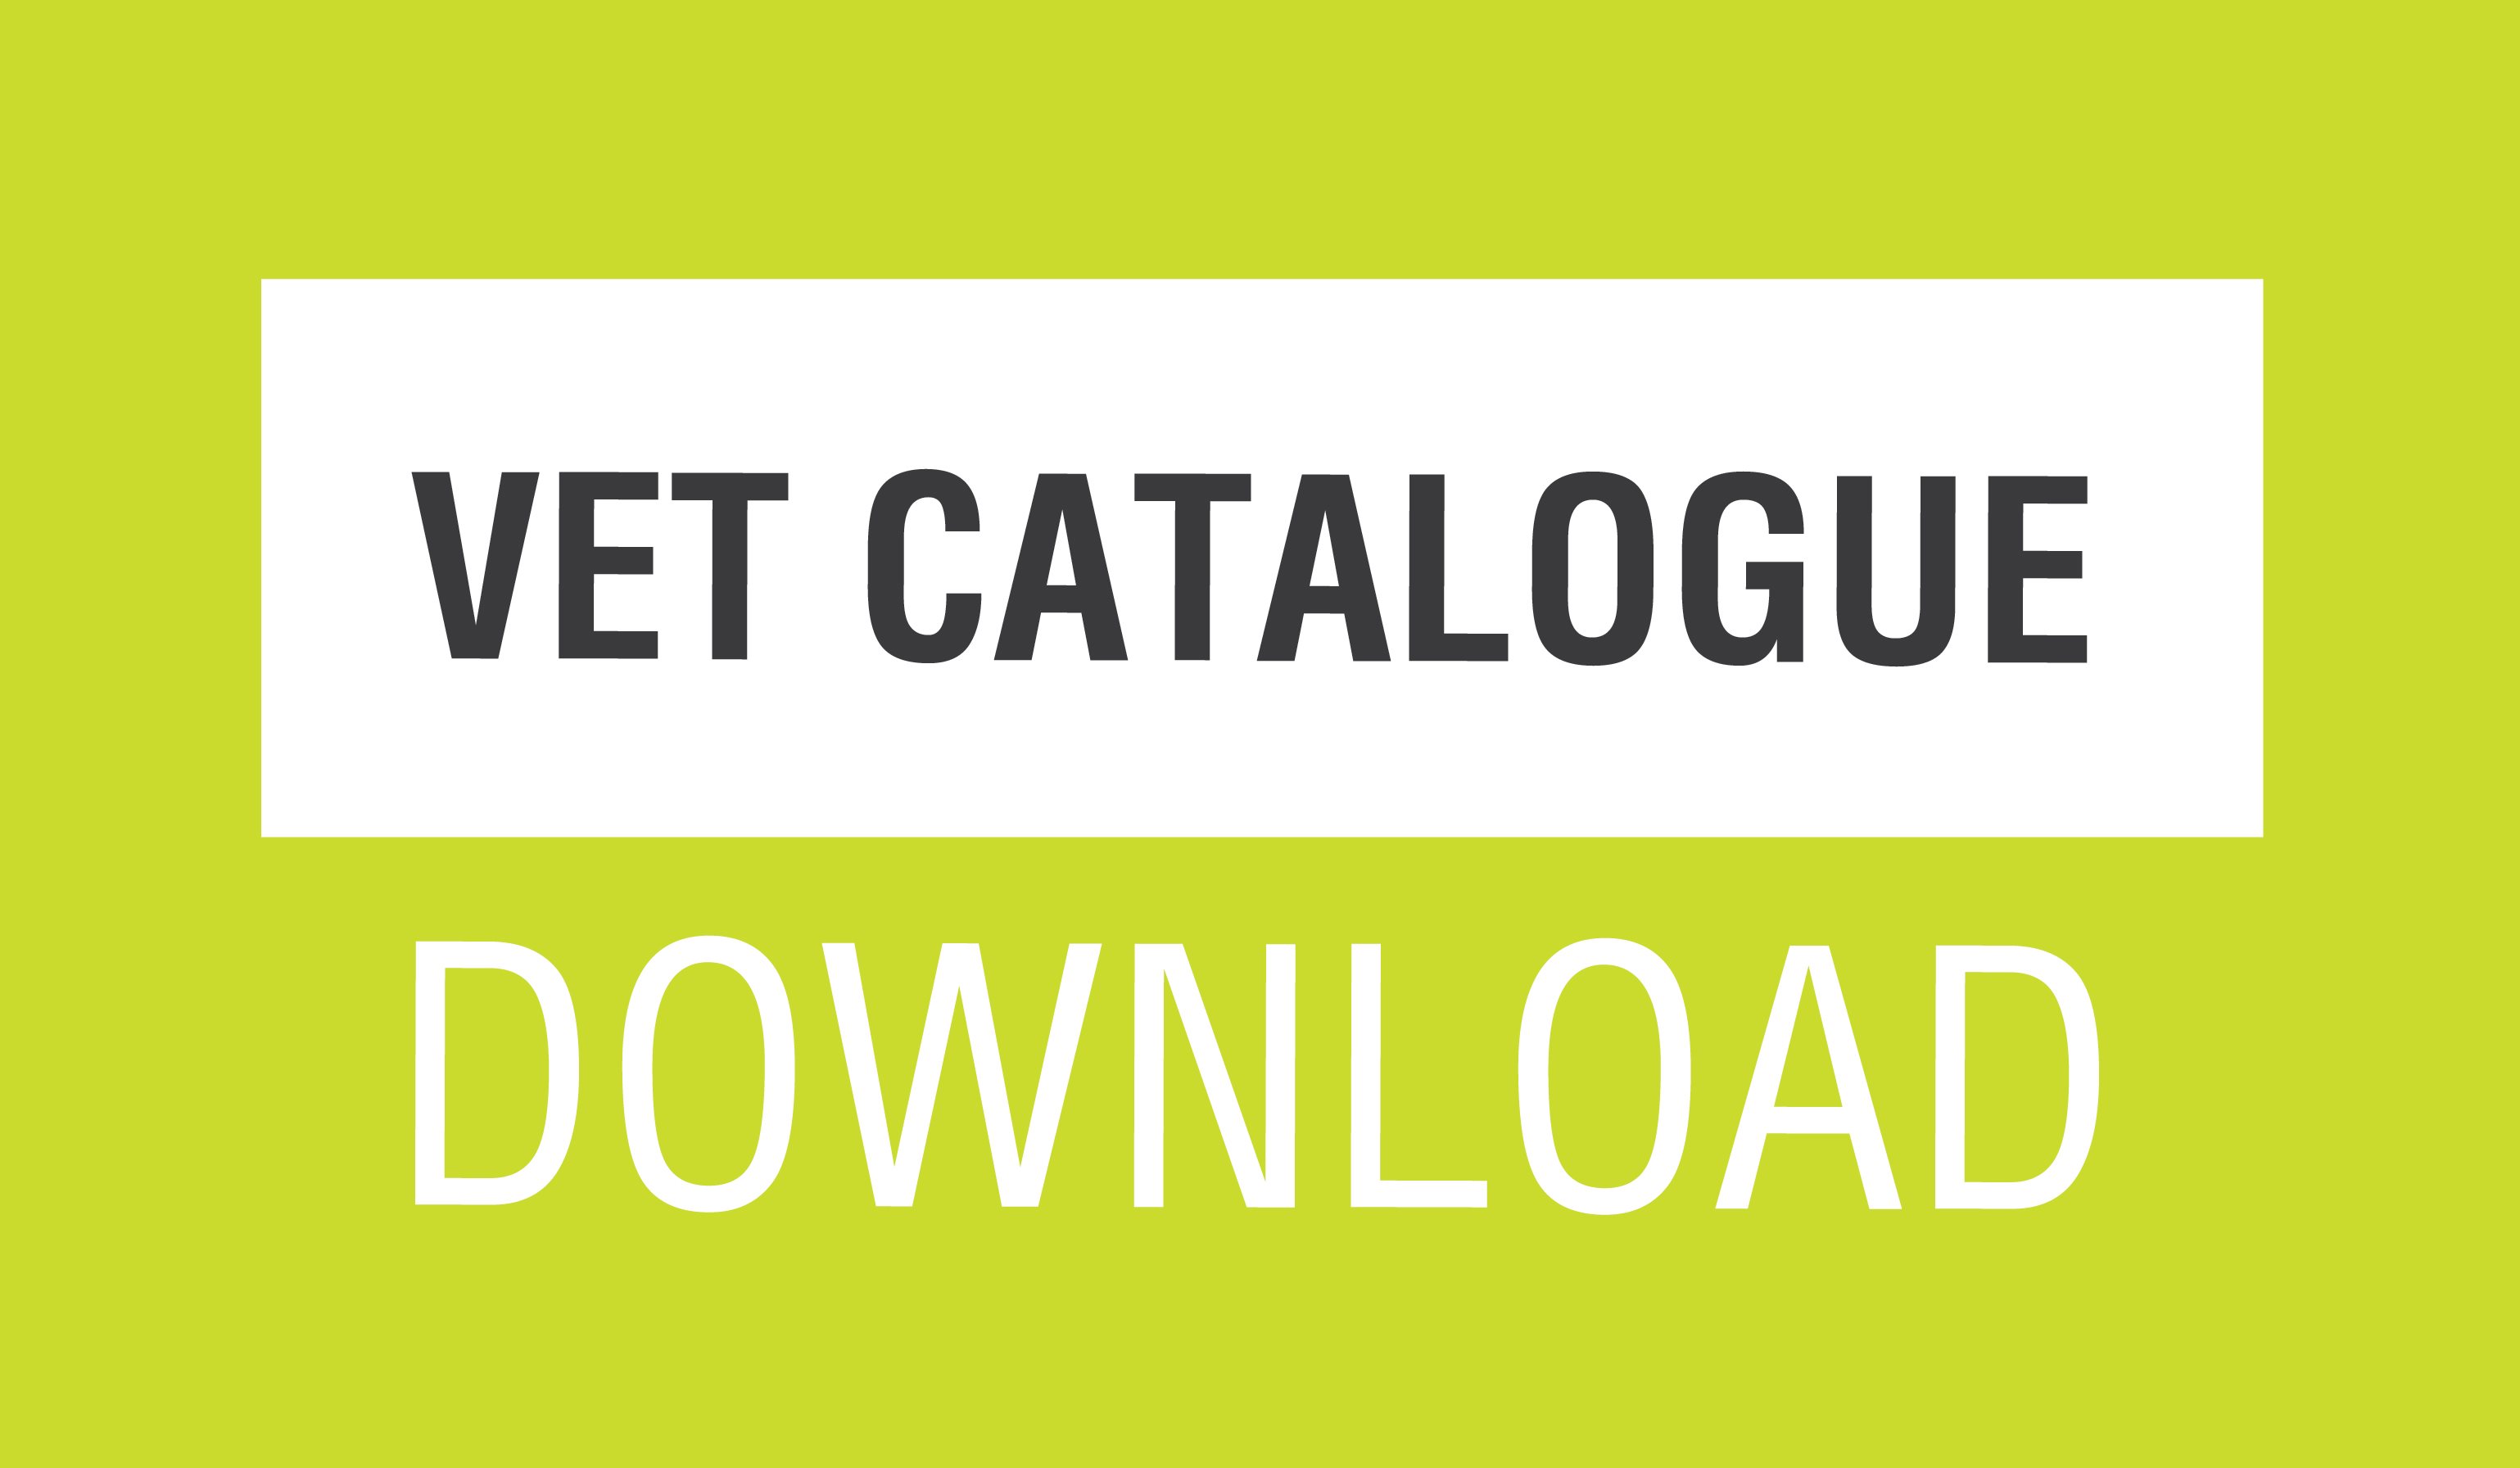 Vet Catalogue - Download-07